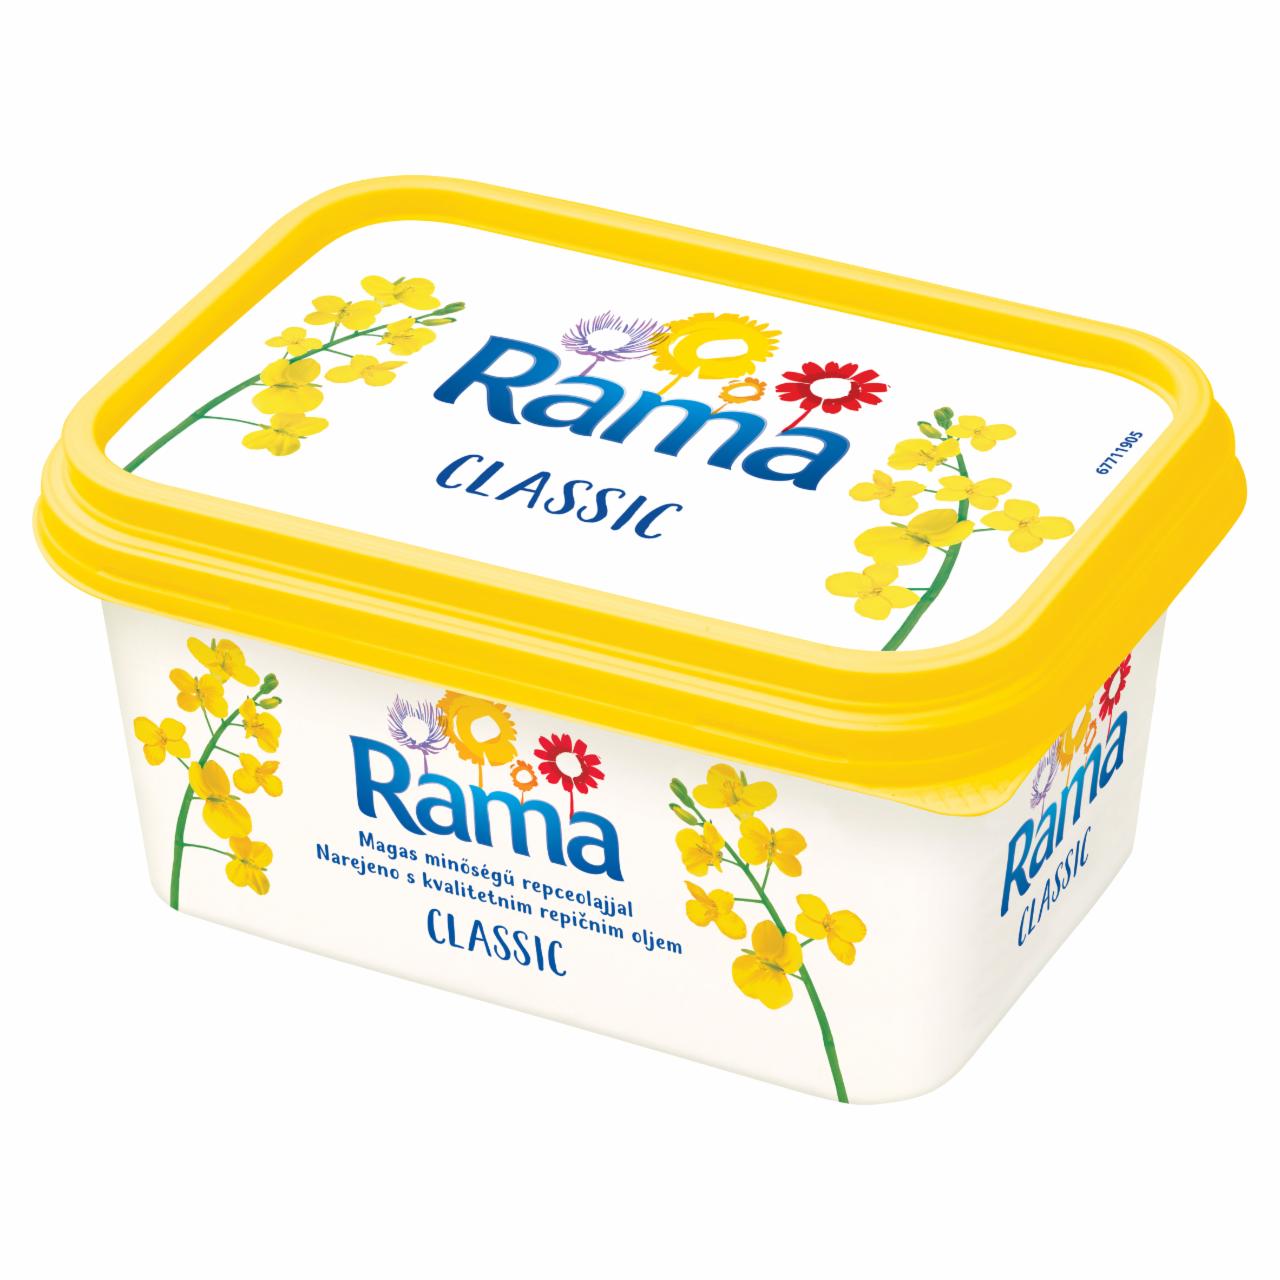 Képek - Rama Classic csökkentett zsírtartalmú margarin 500 g